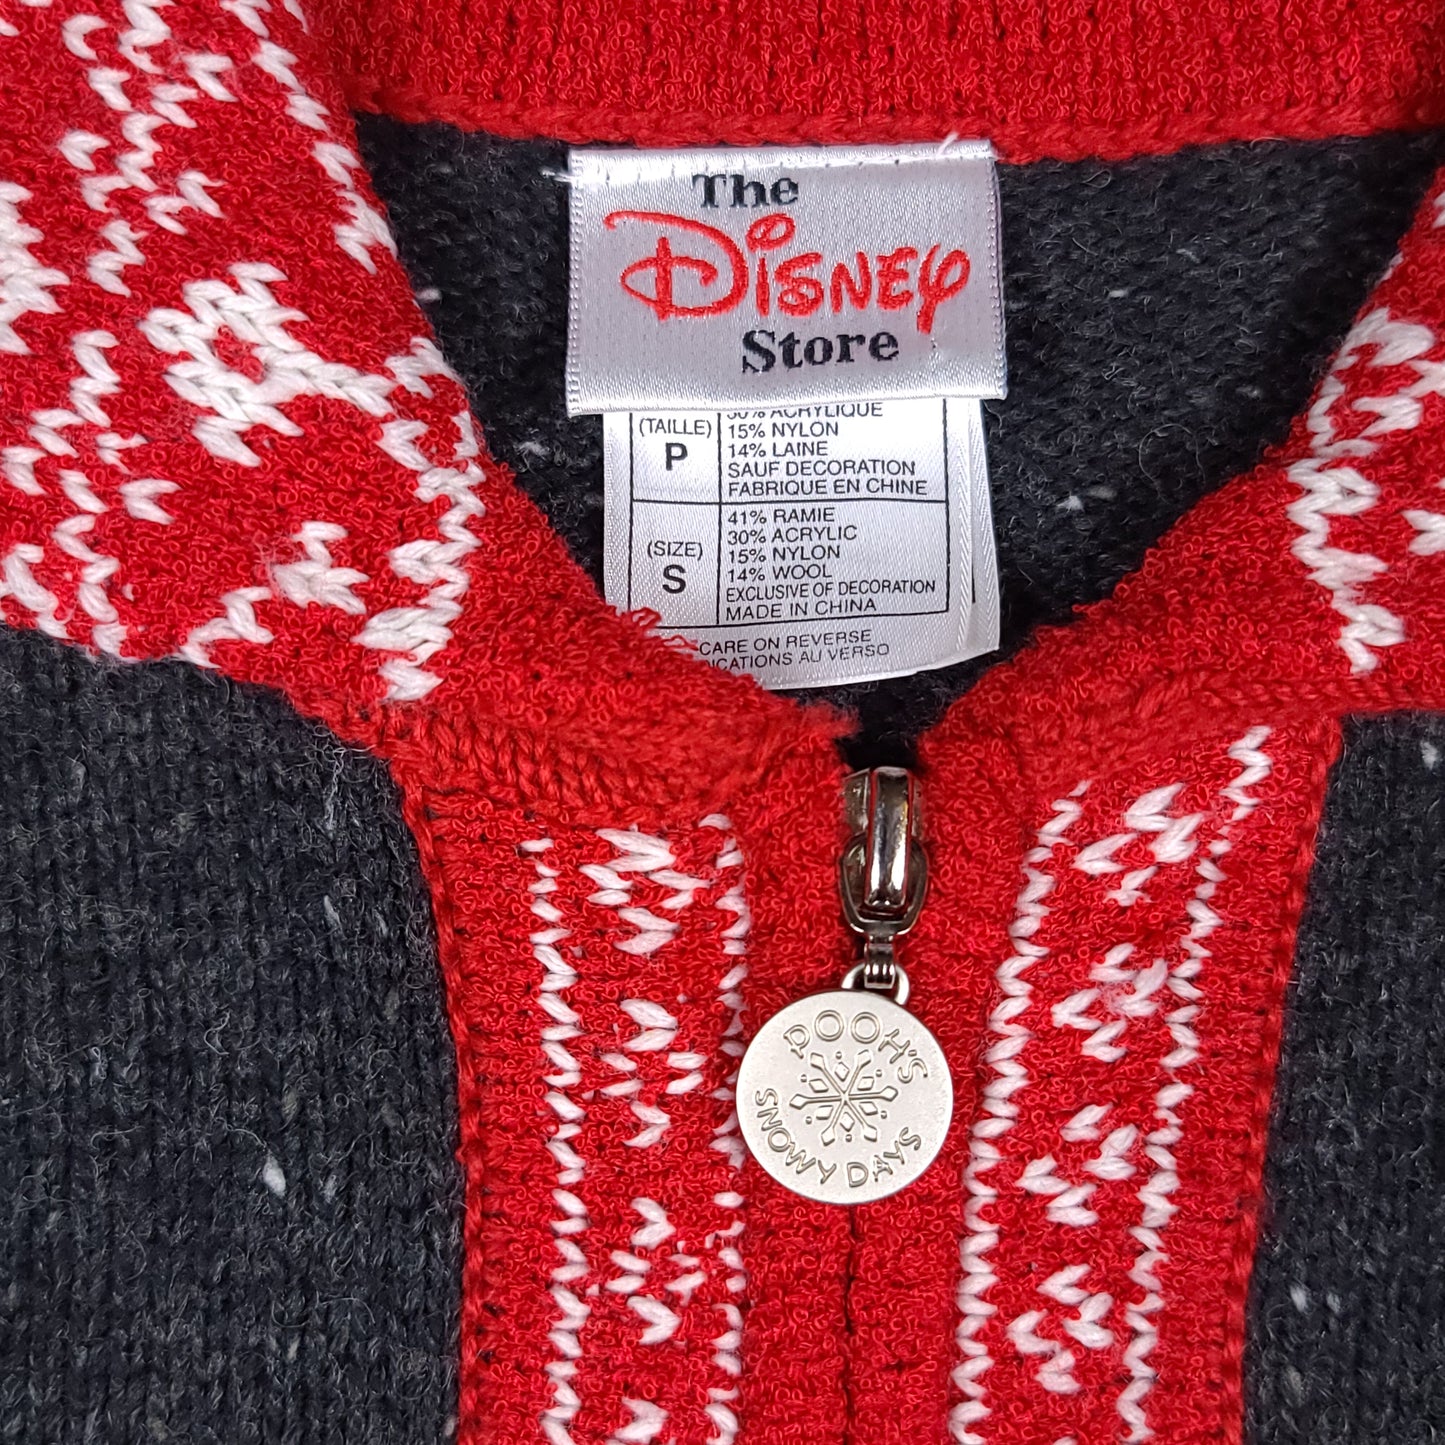 Vintage Winnie the Pooh Snowflake Zip Up Disney Ramie Sweater